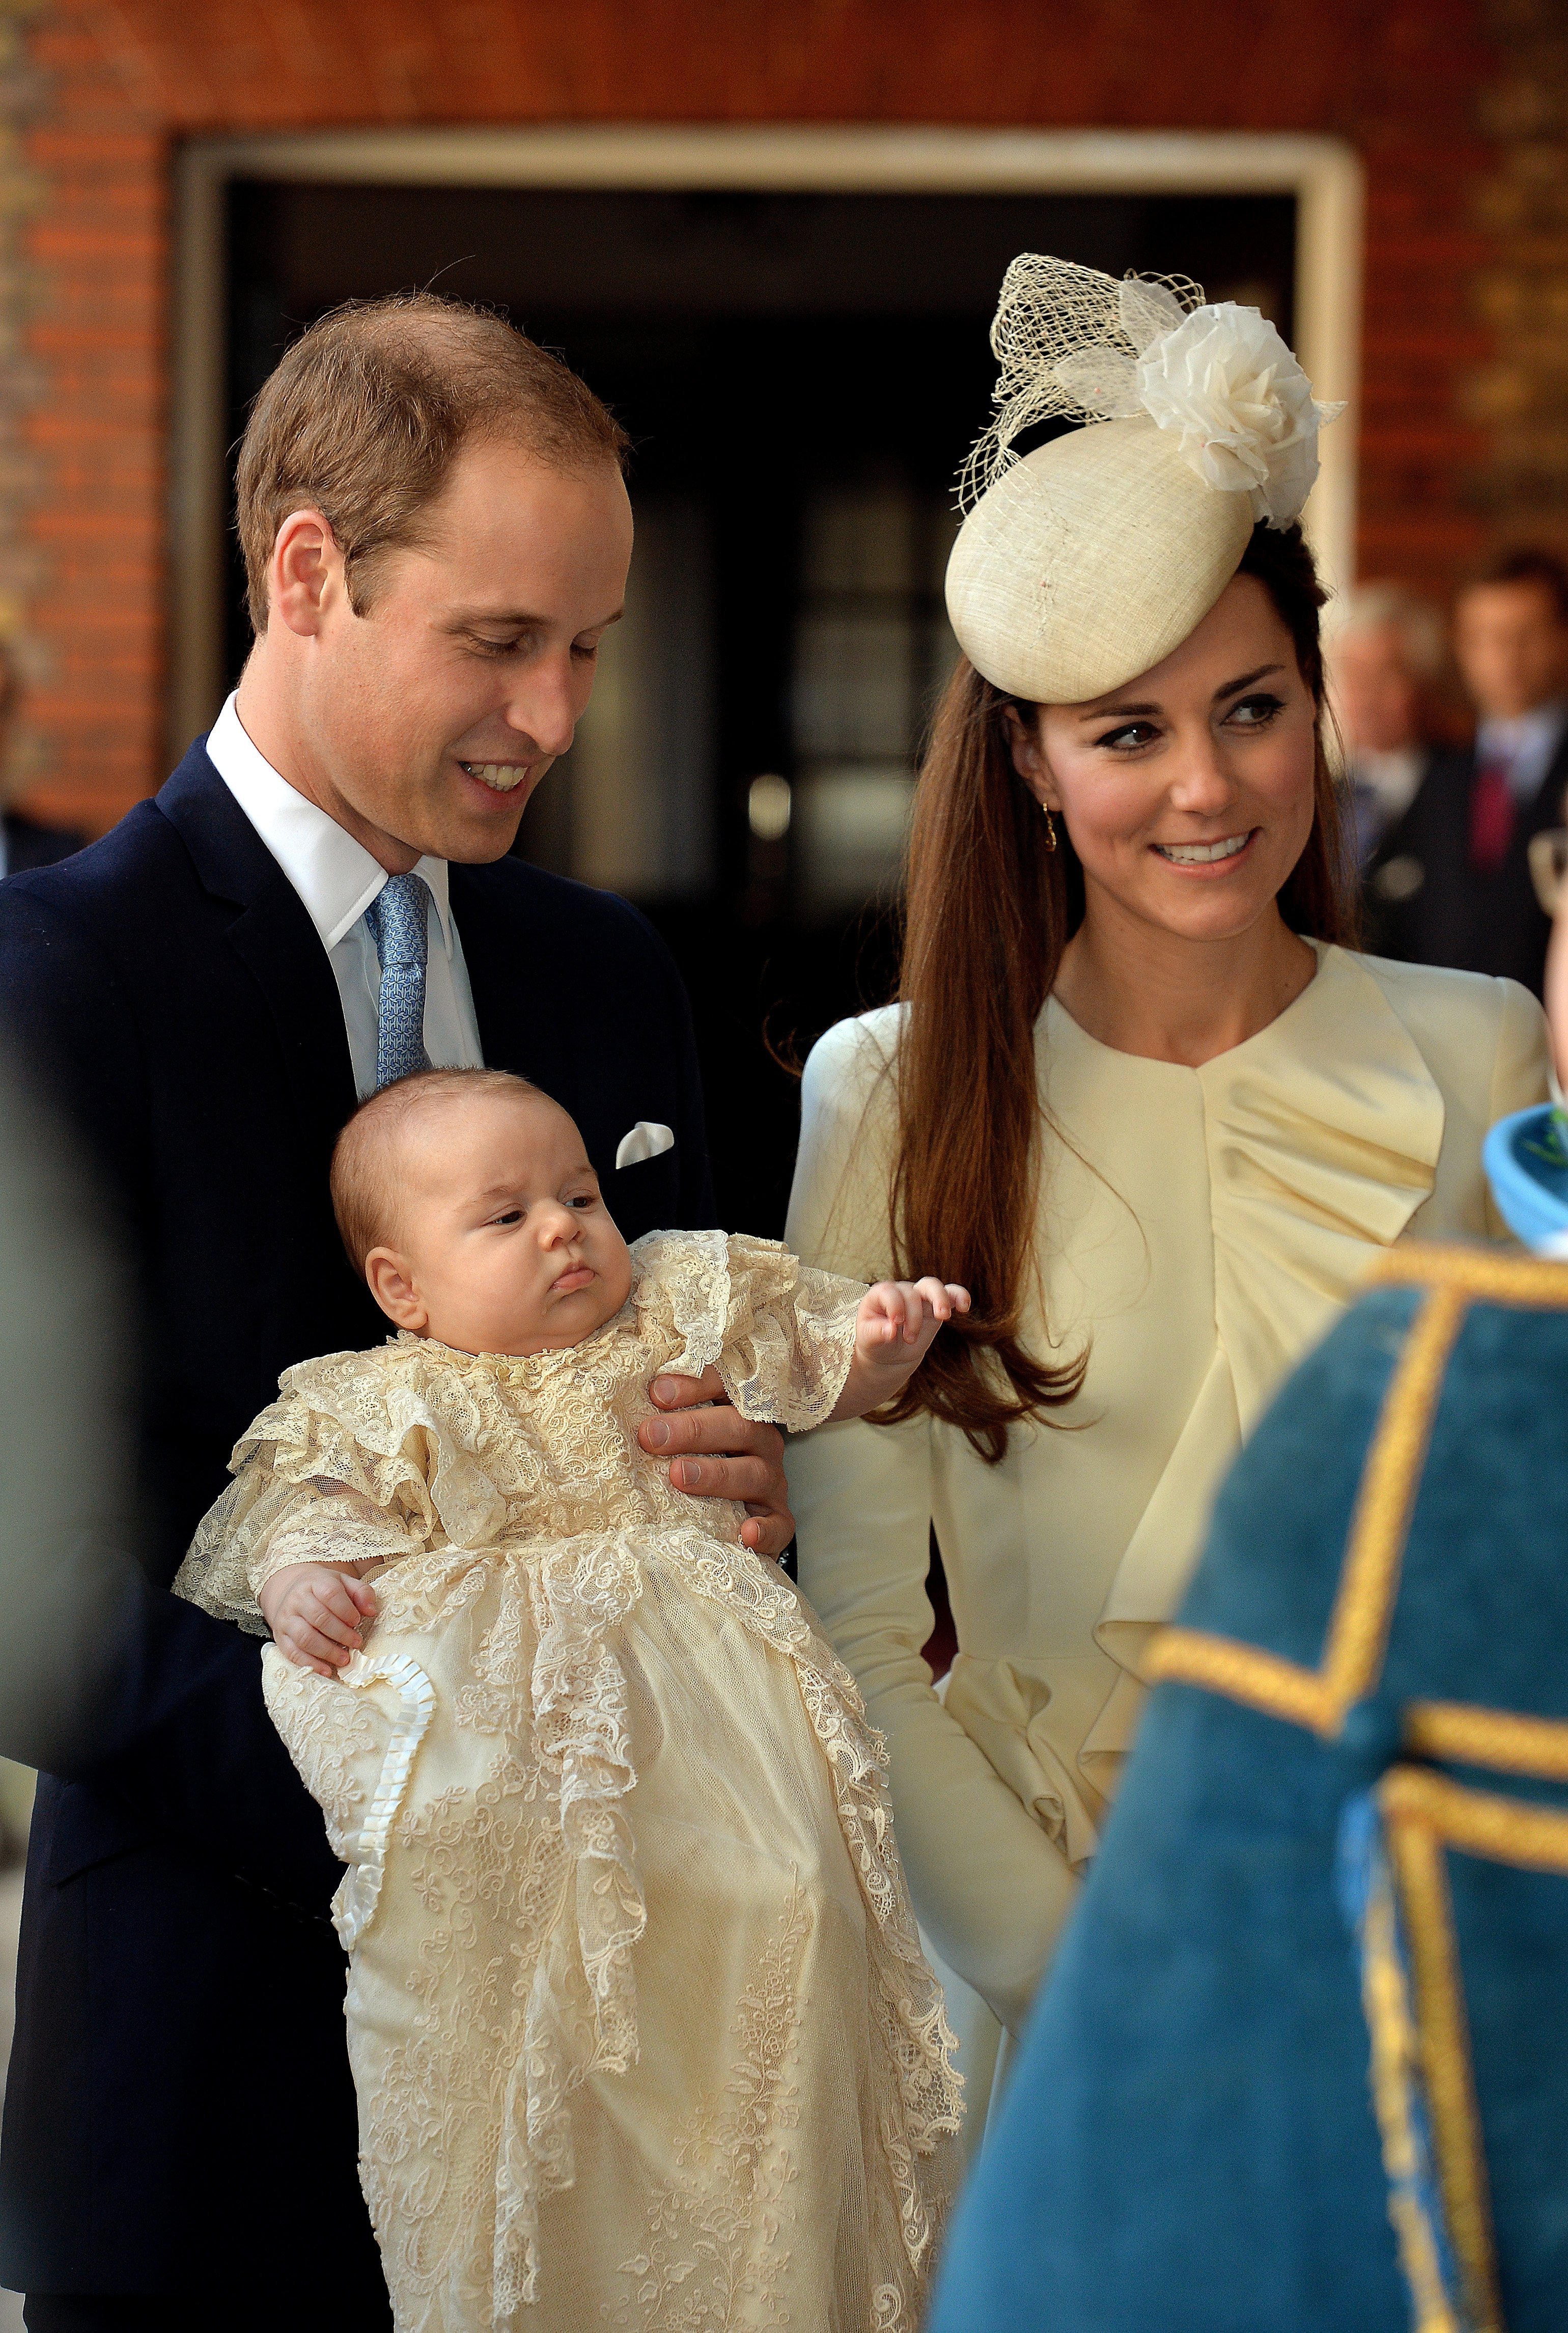 El príncipe George con la réplica del vestido de bautizo real con el príncipe William y Kate Middleton en el Palacio de St. James en Londres, Inglaterra | Foto: Getty Images